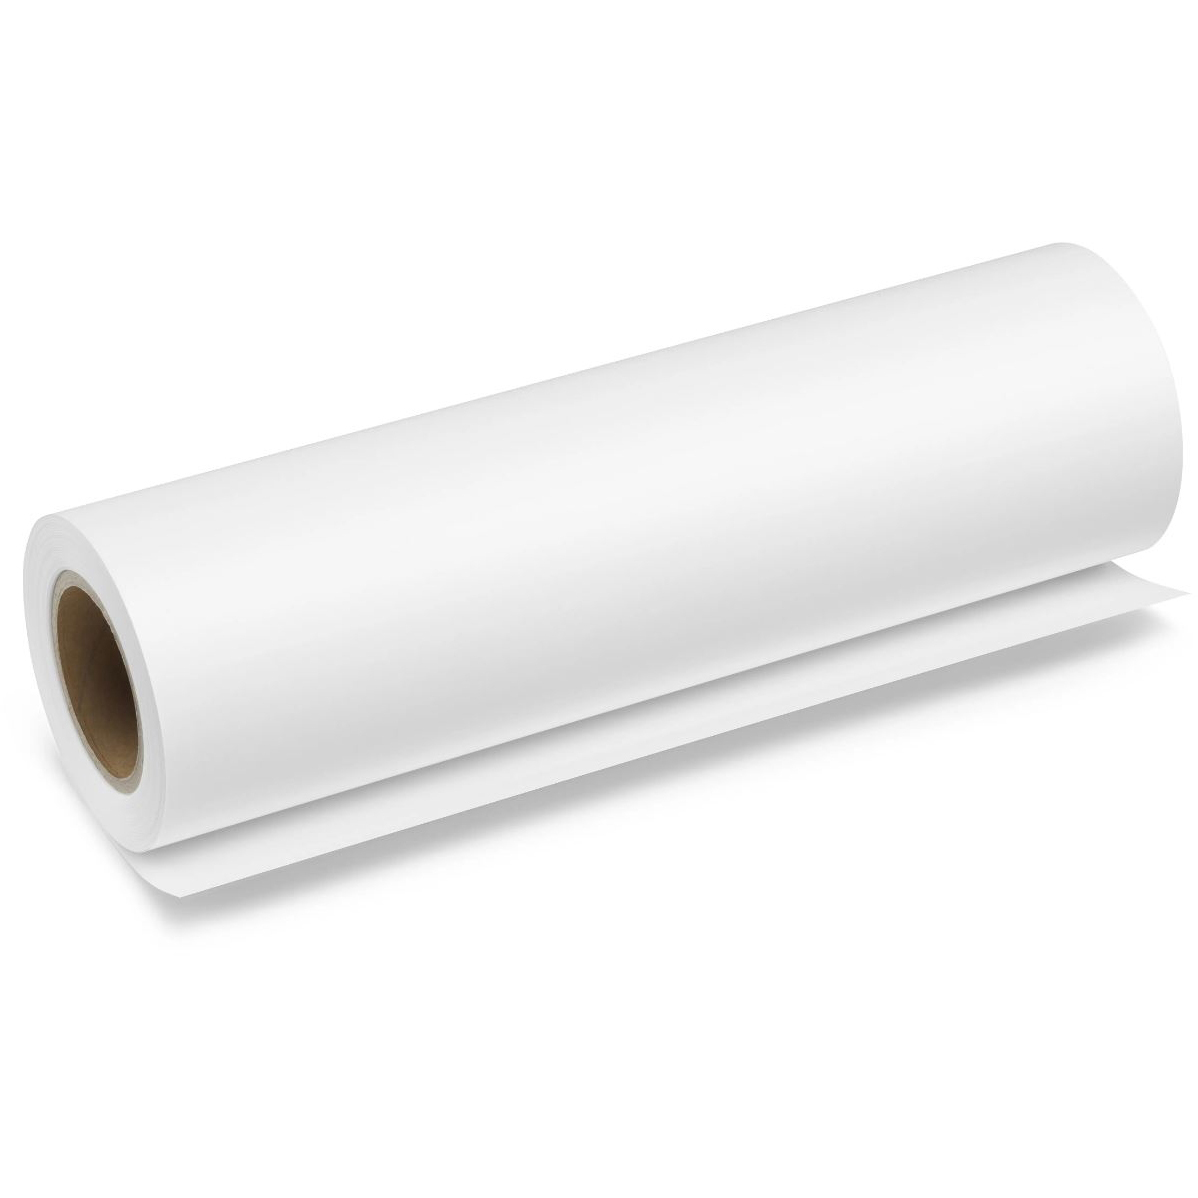 Original Brother BP80PRA3 A3 Plain Thermal Paper Roll 37.5m x 29.7cm (BP80PRA3)